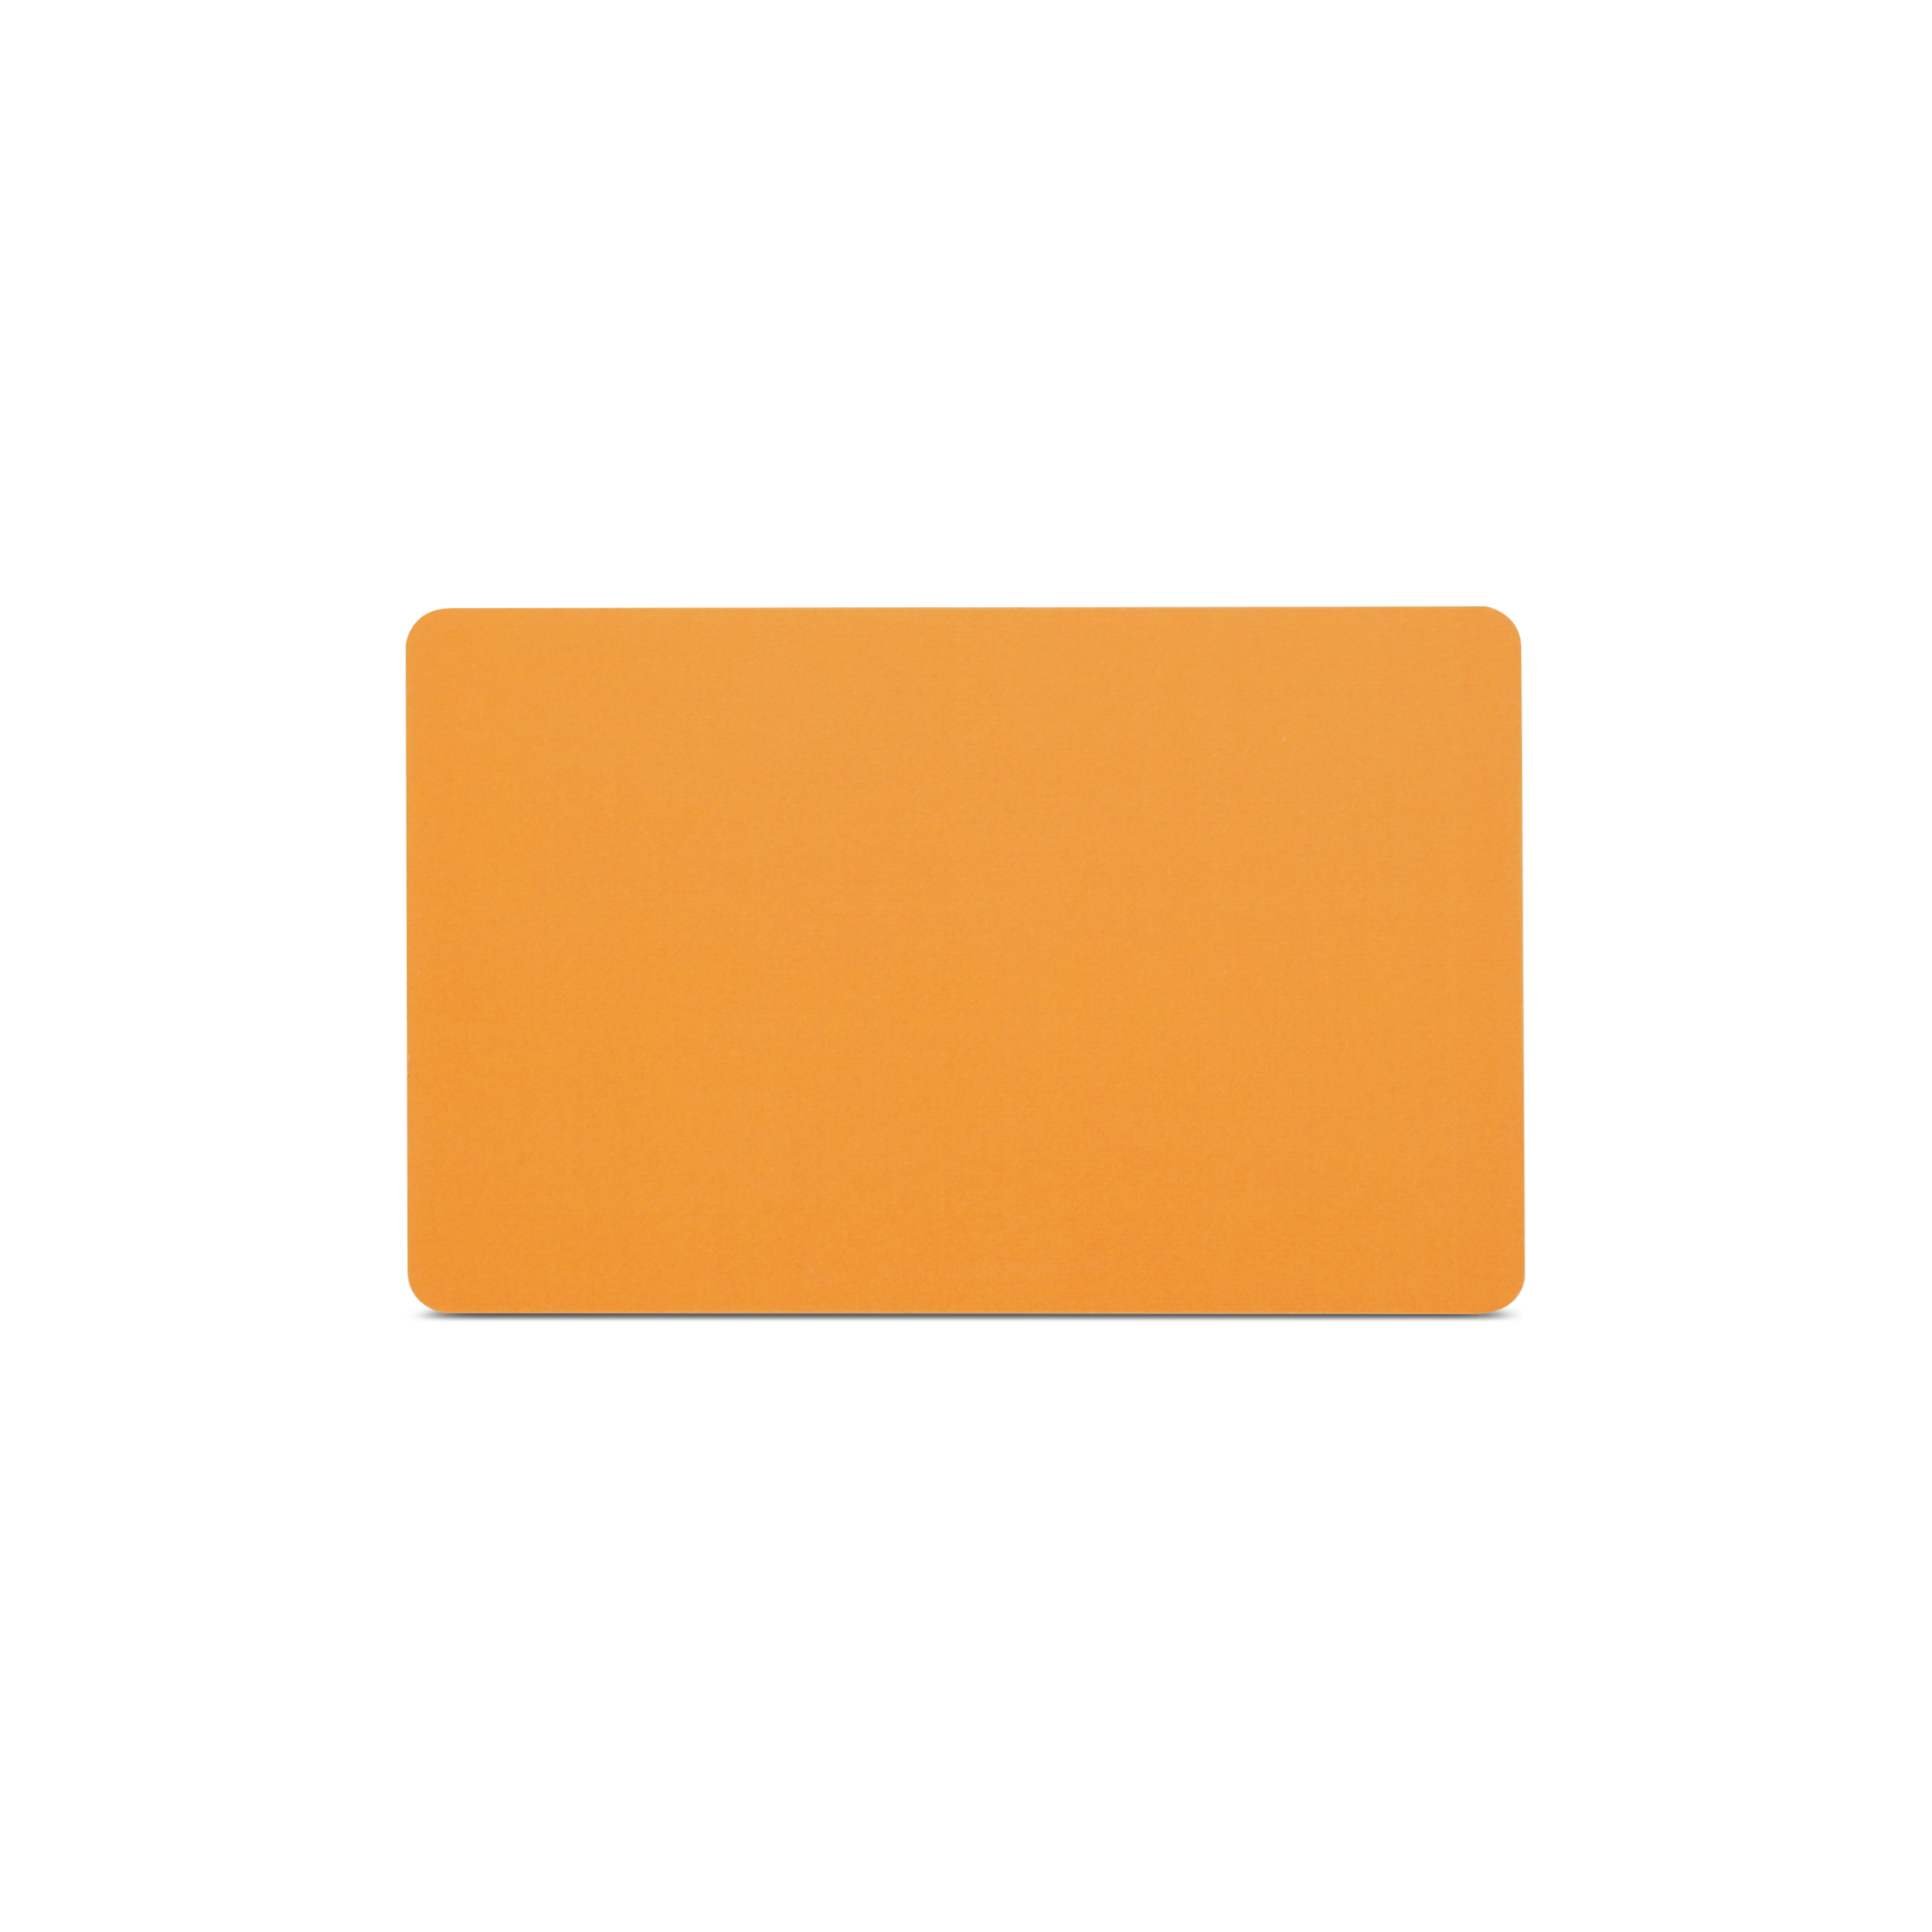 Rückseite NFC Schutzkarte in orange im ISO-Format